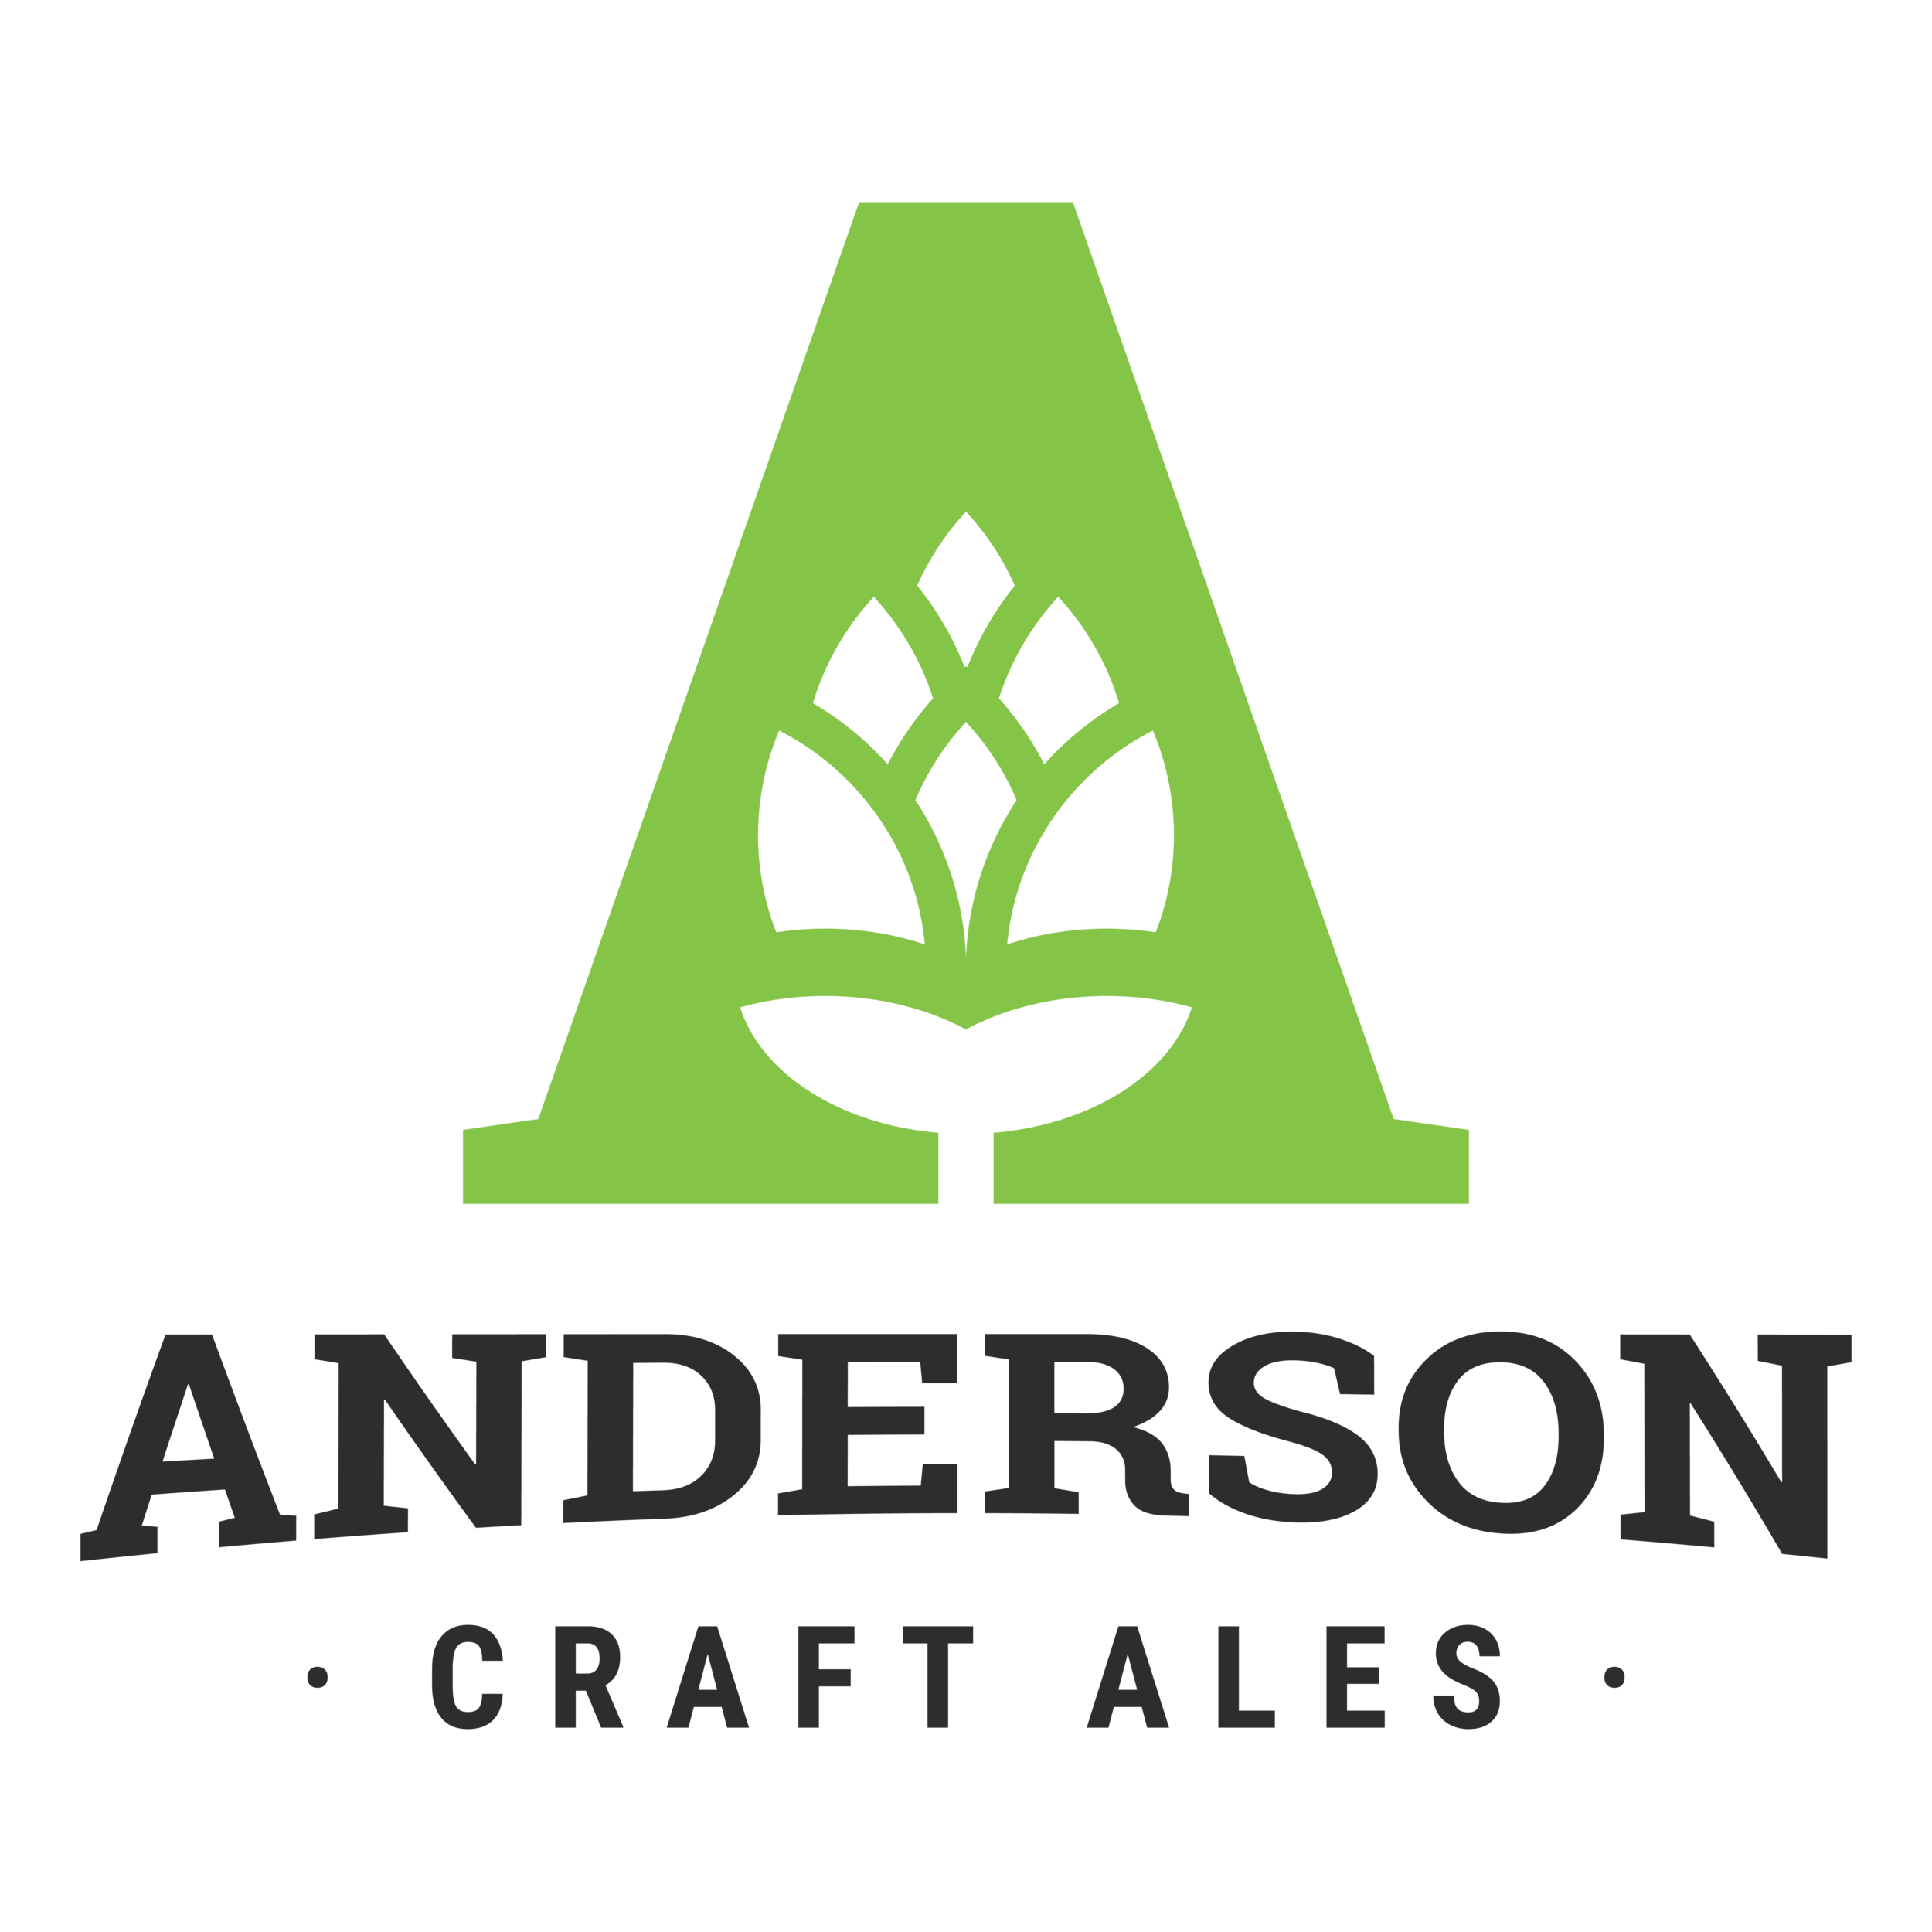 Anderson Craft Ales logo.png